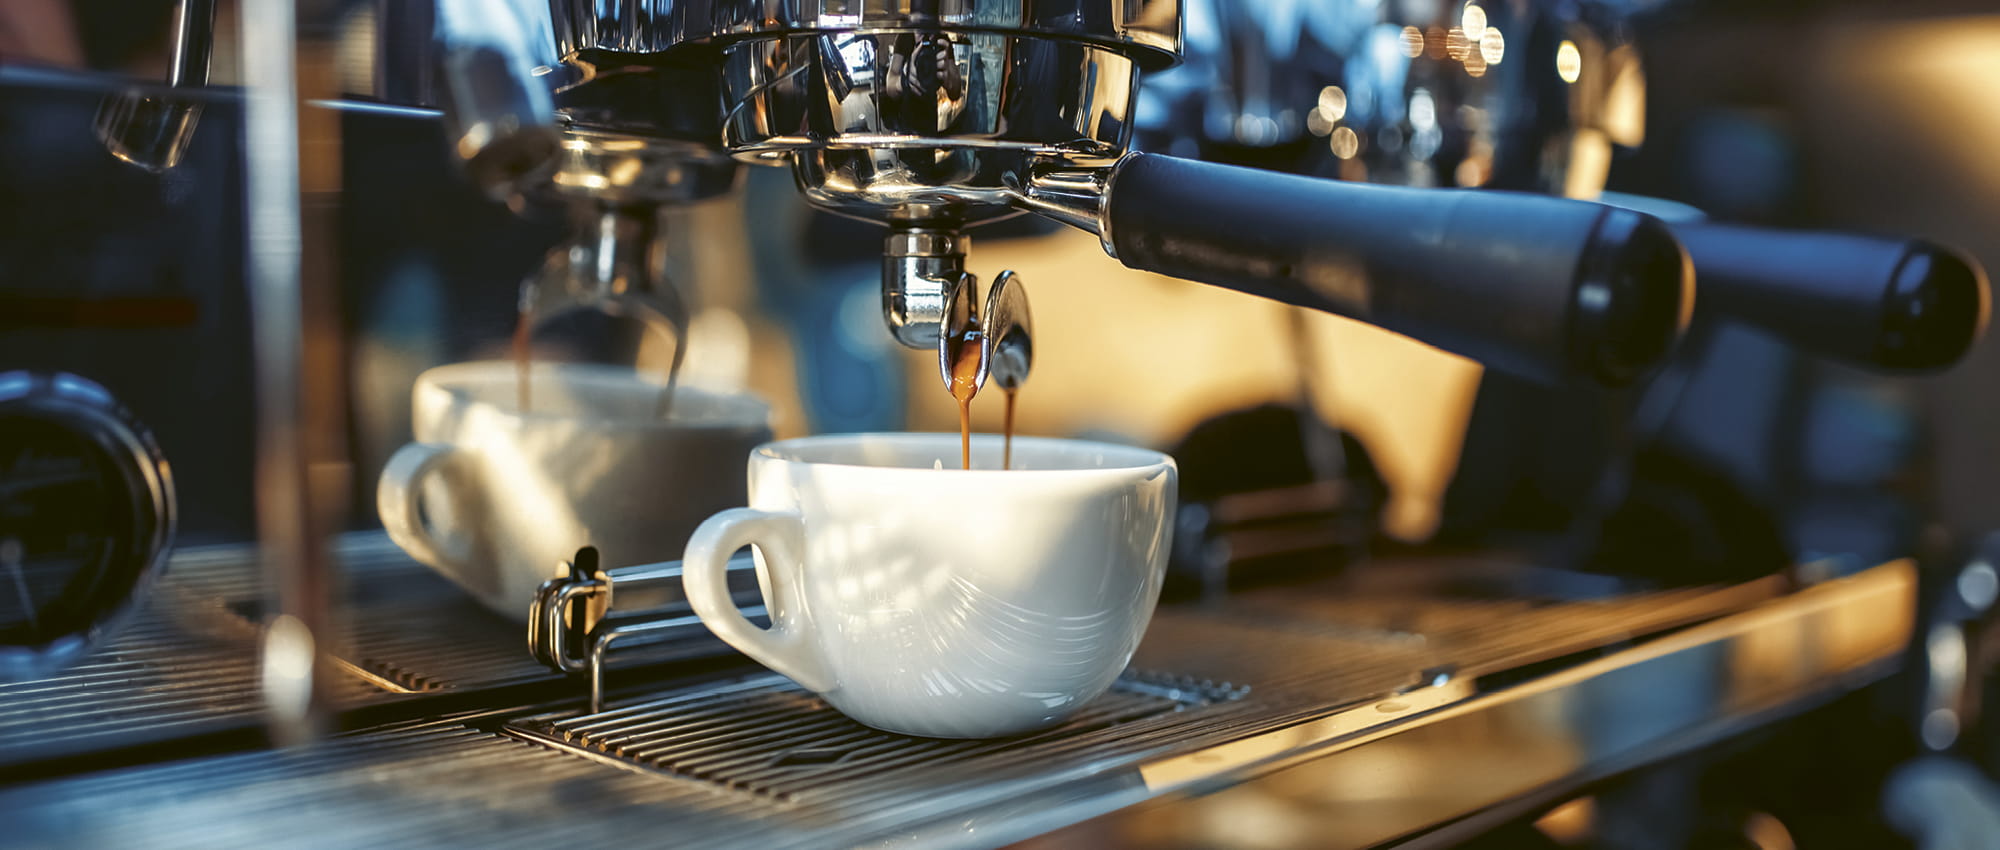 Kaffee aus einer Kaffeemaschine läuft in eine Tasse. Copyright: Adobestock/Nomad_Soul